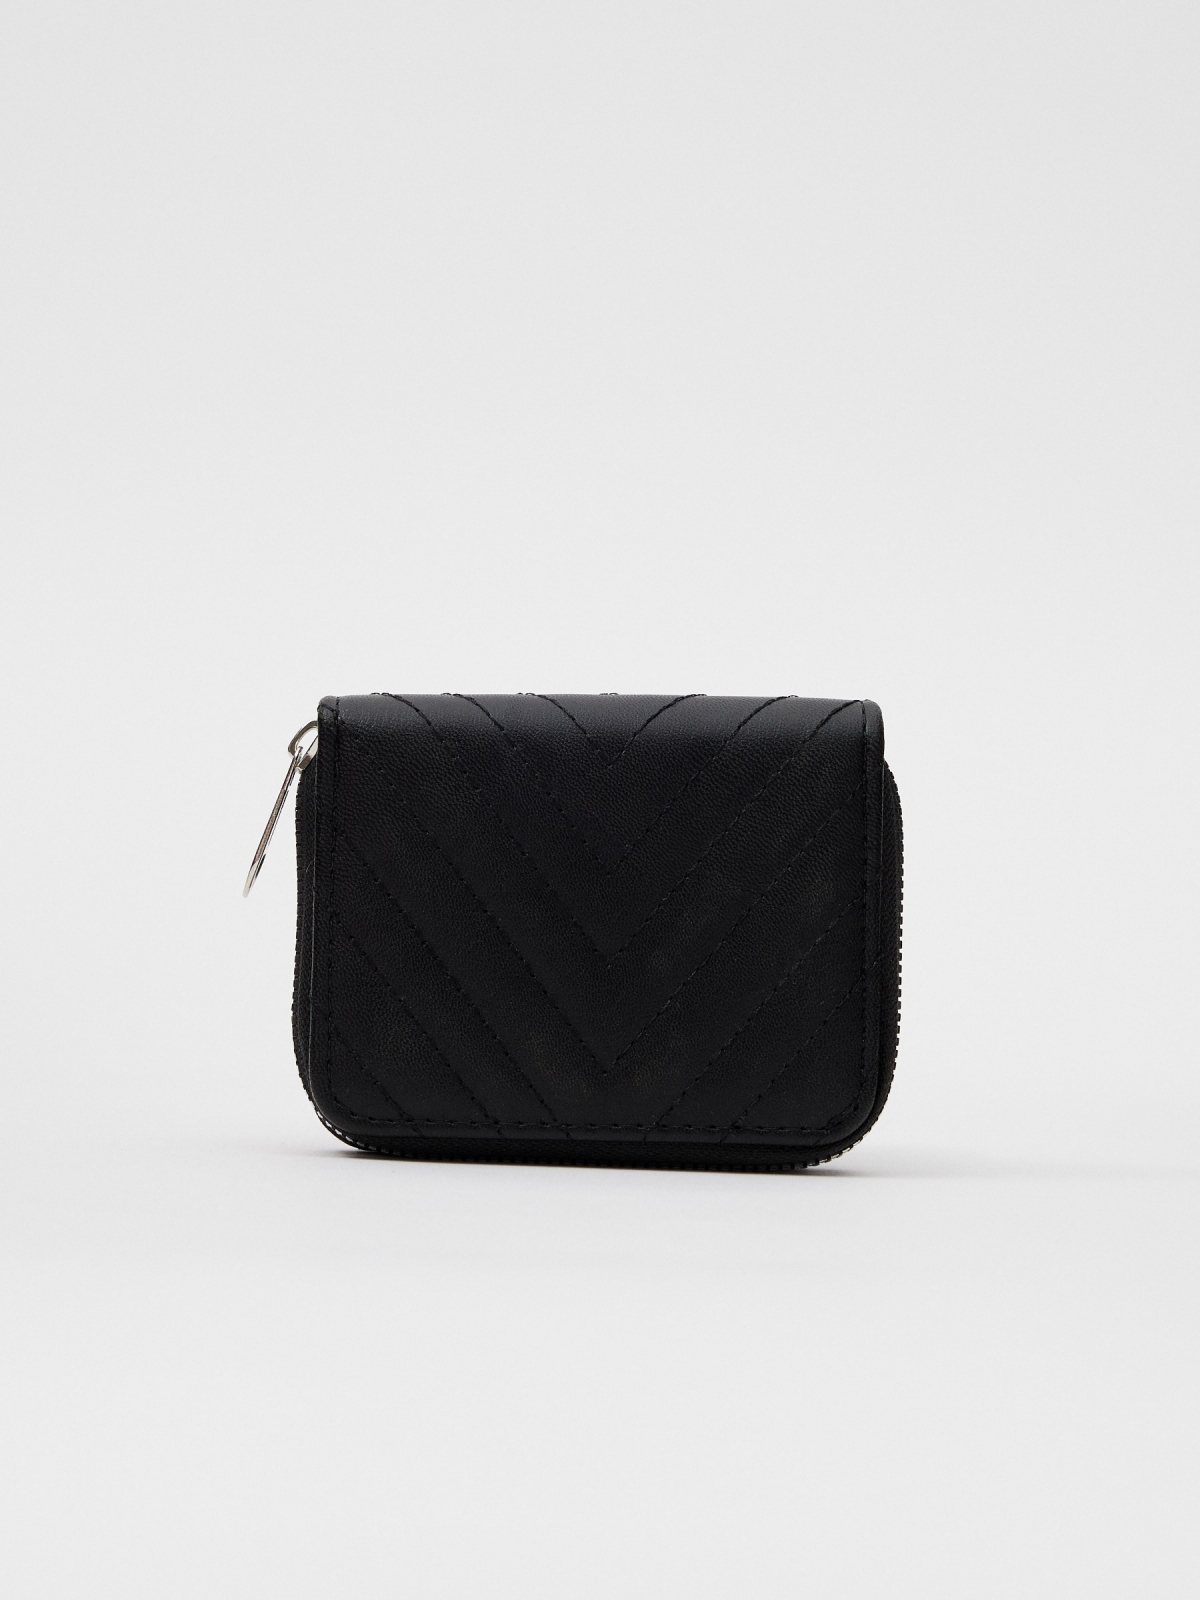 Women's leatherette wallet black